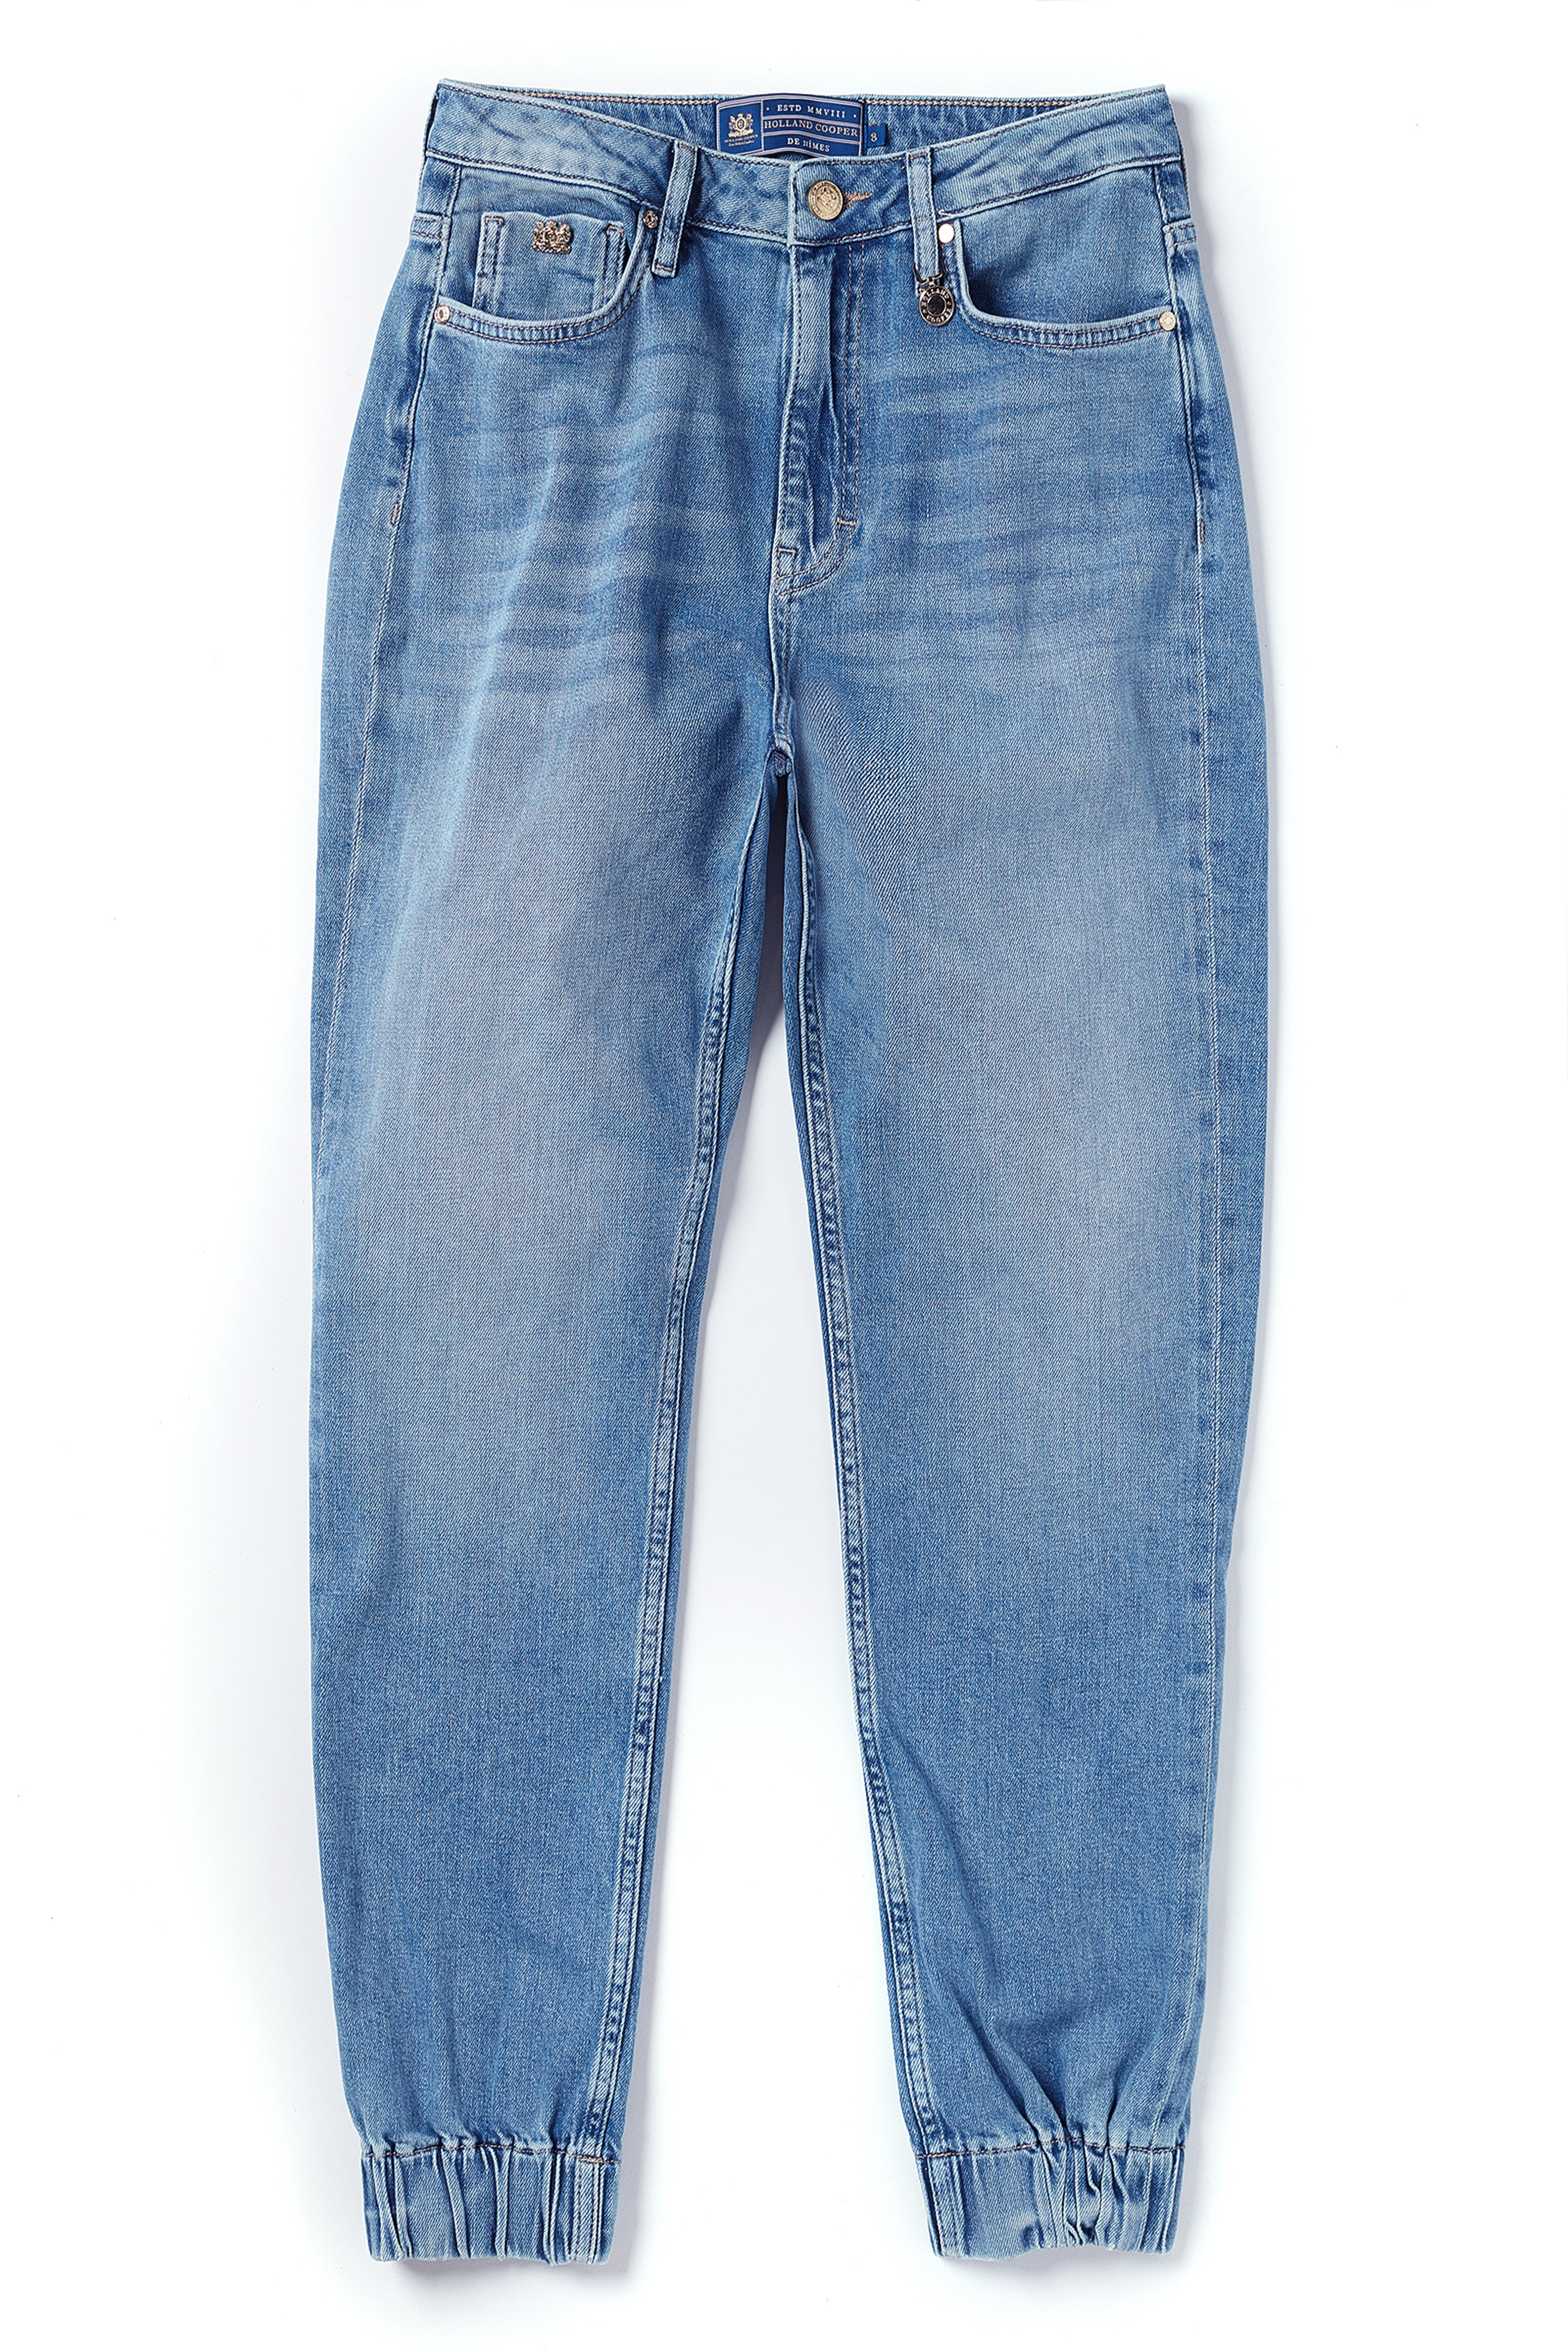 Cooper ® – Biker Holland Jeans